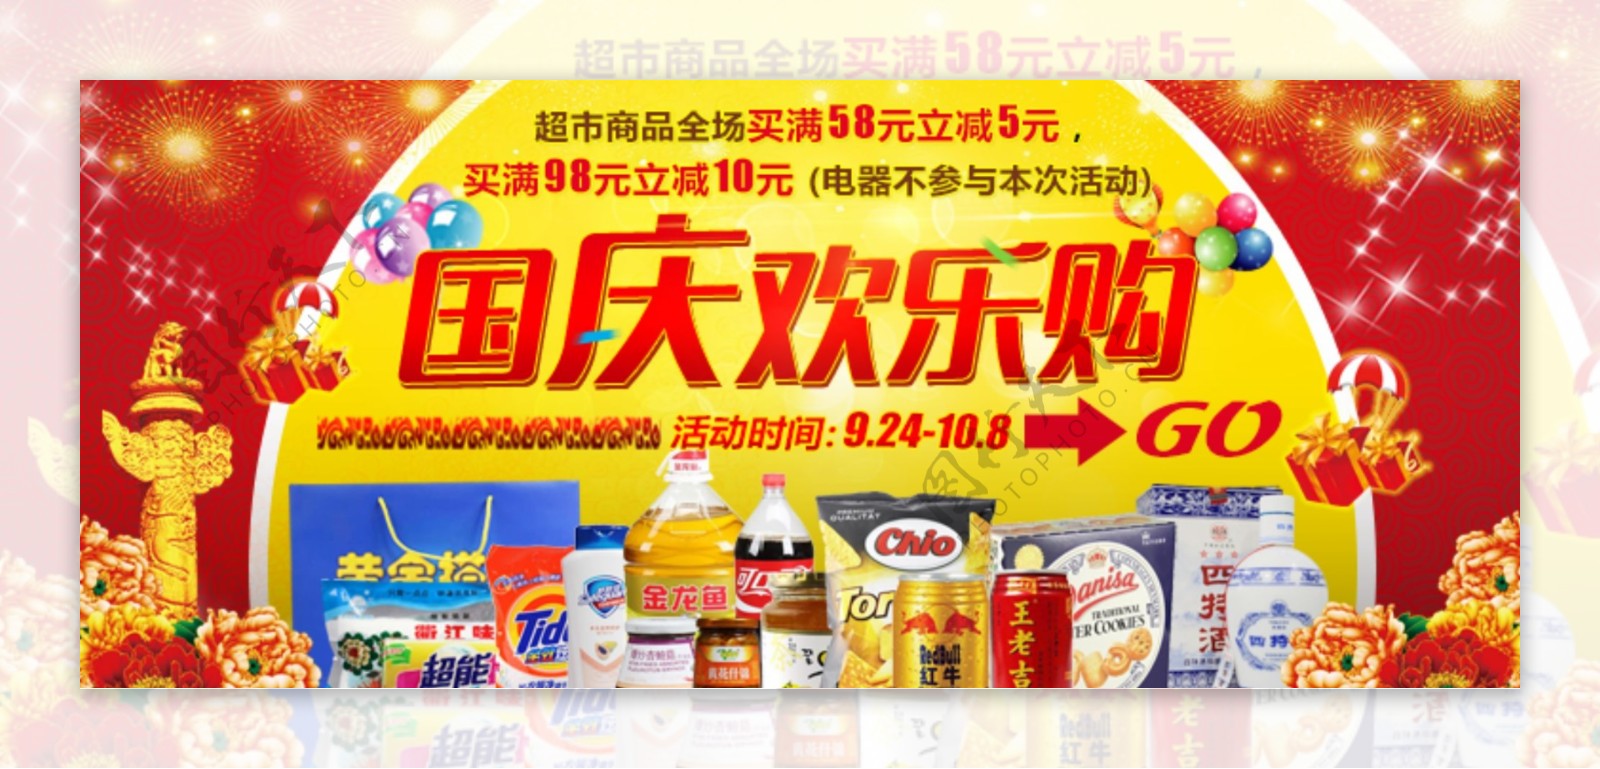 国庆欢乐购超市海报PSD分层